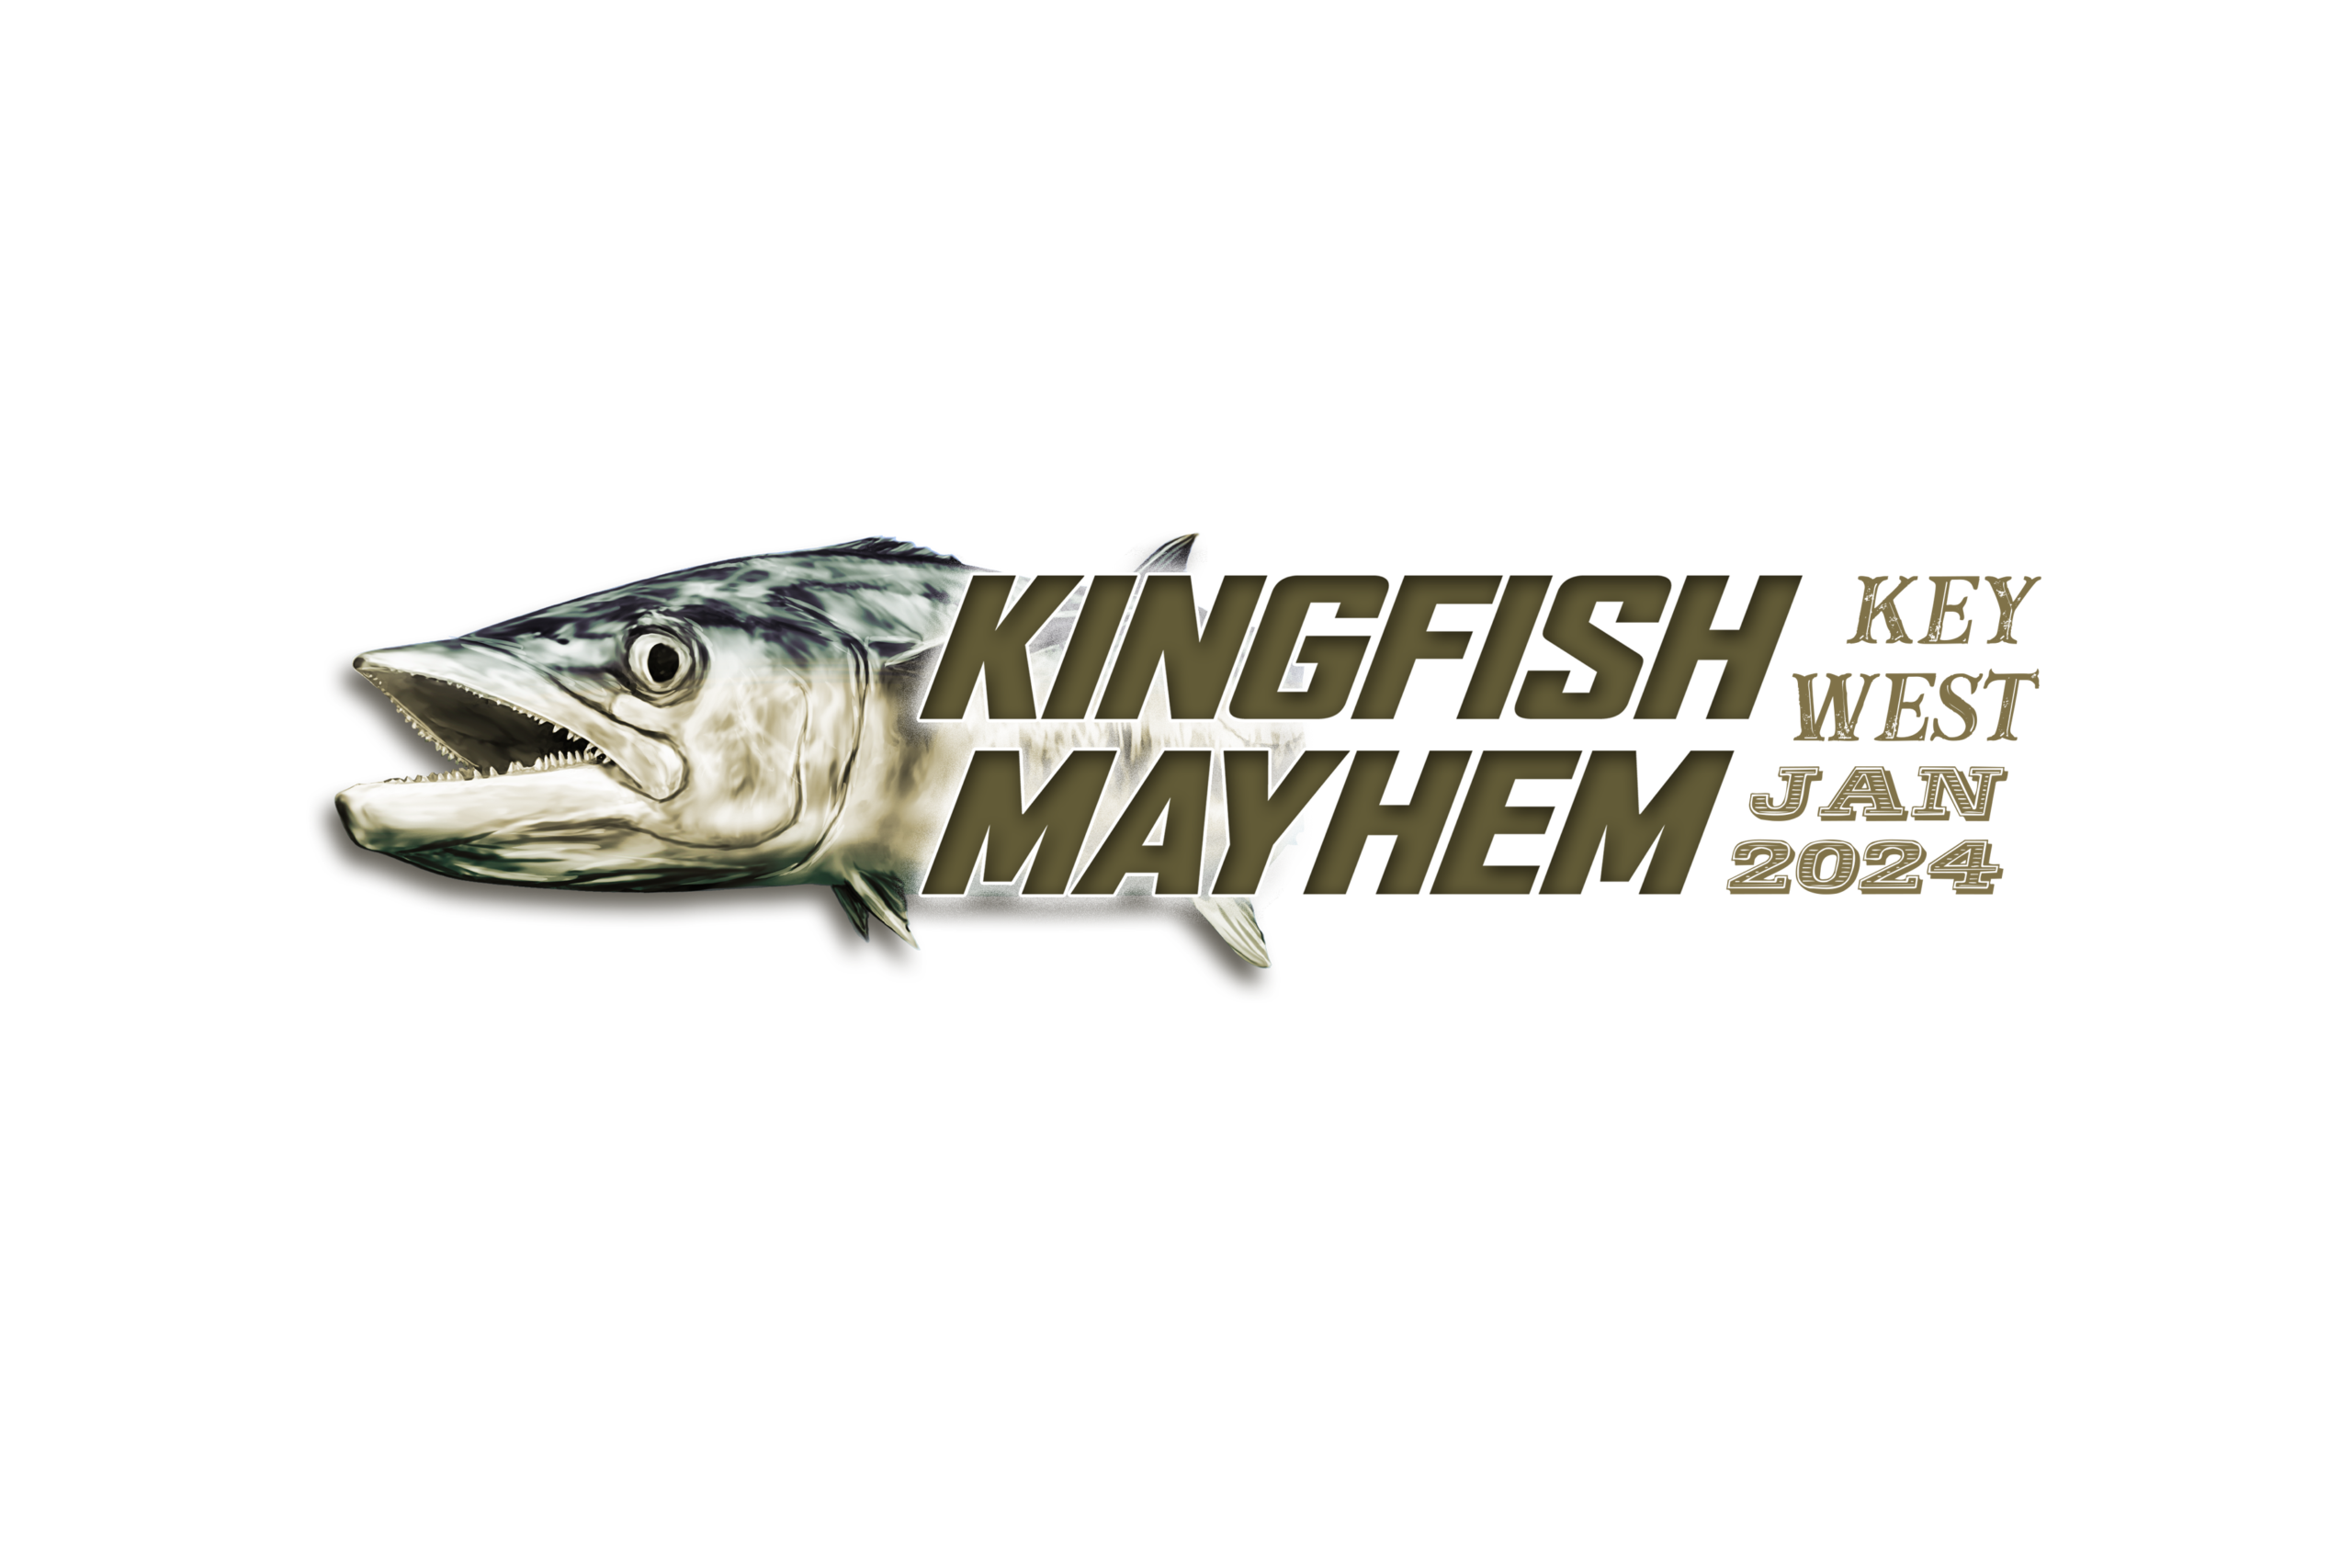 leg one: key west kingfish mayhem